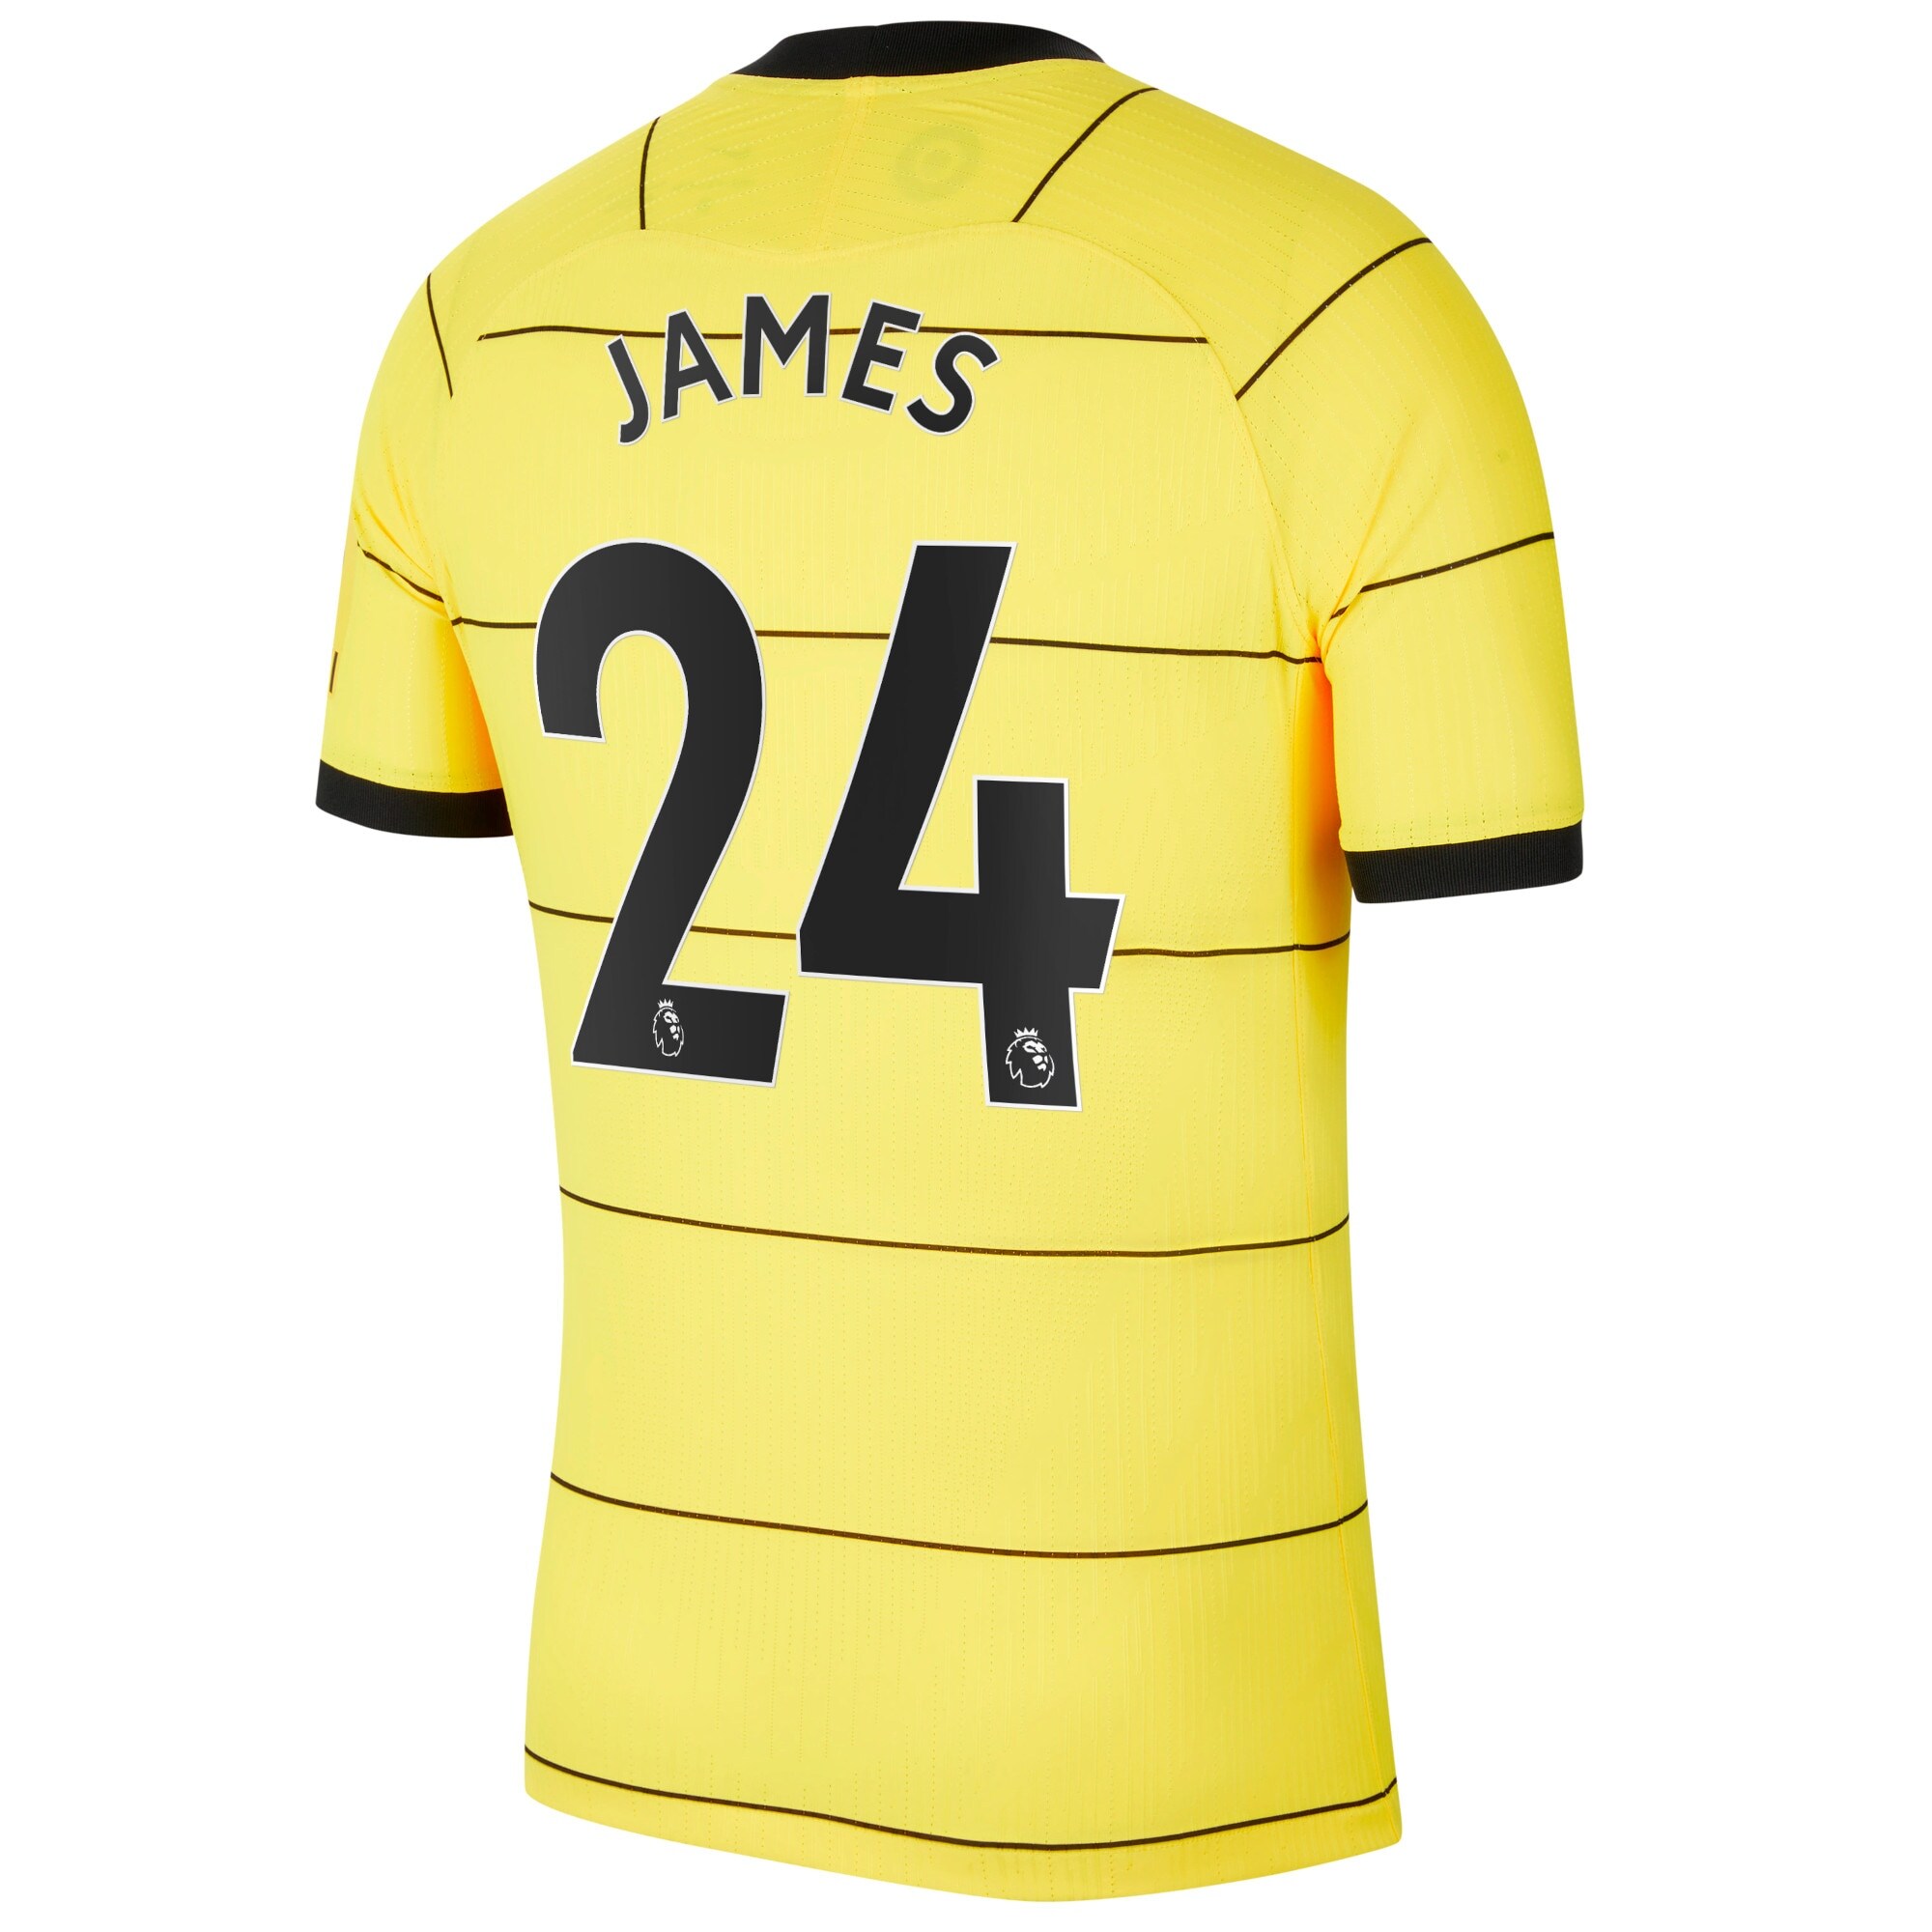 Chelsea Away Vapor Match Shirt 2021-22 with James 24 printing